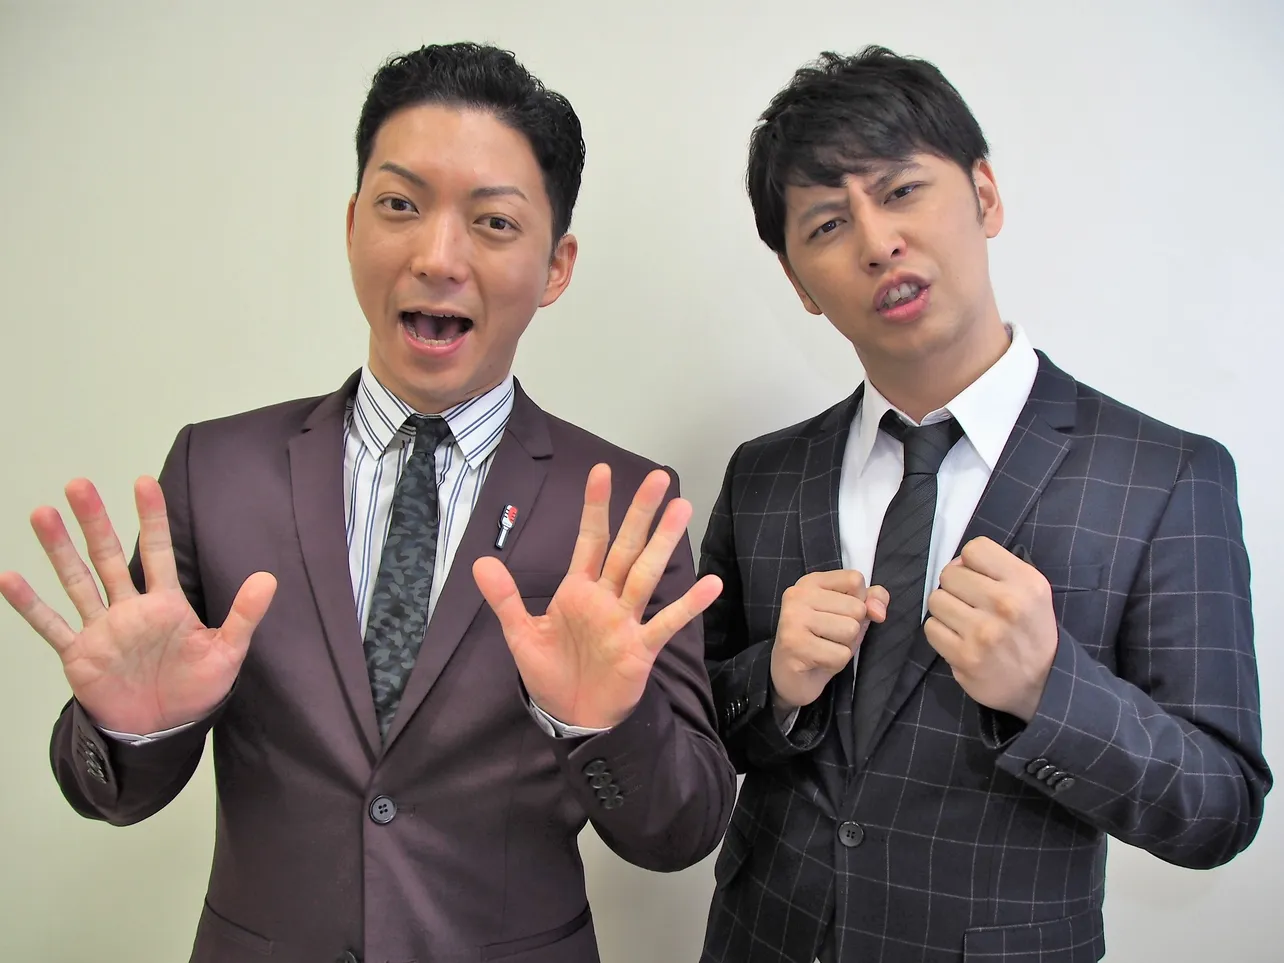 「冗談手帖」のコーナーに出演するニューヨークの嶋佐和也(左)と屋敷裕政(右)